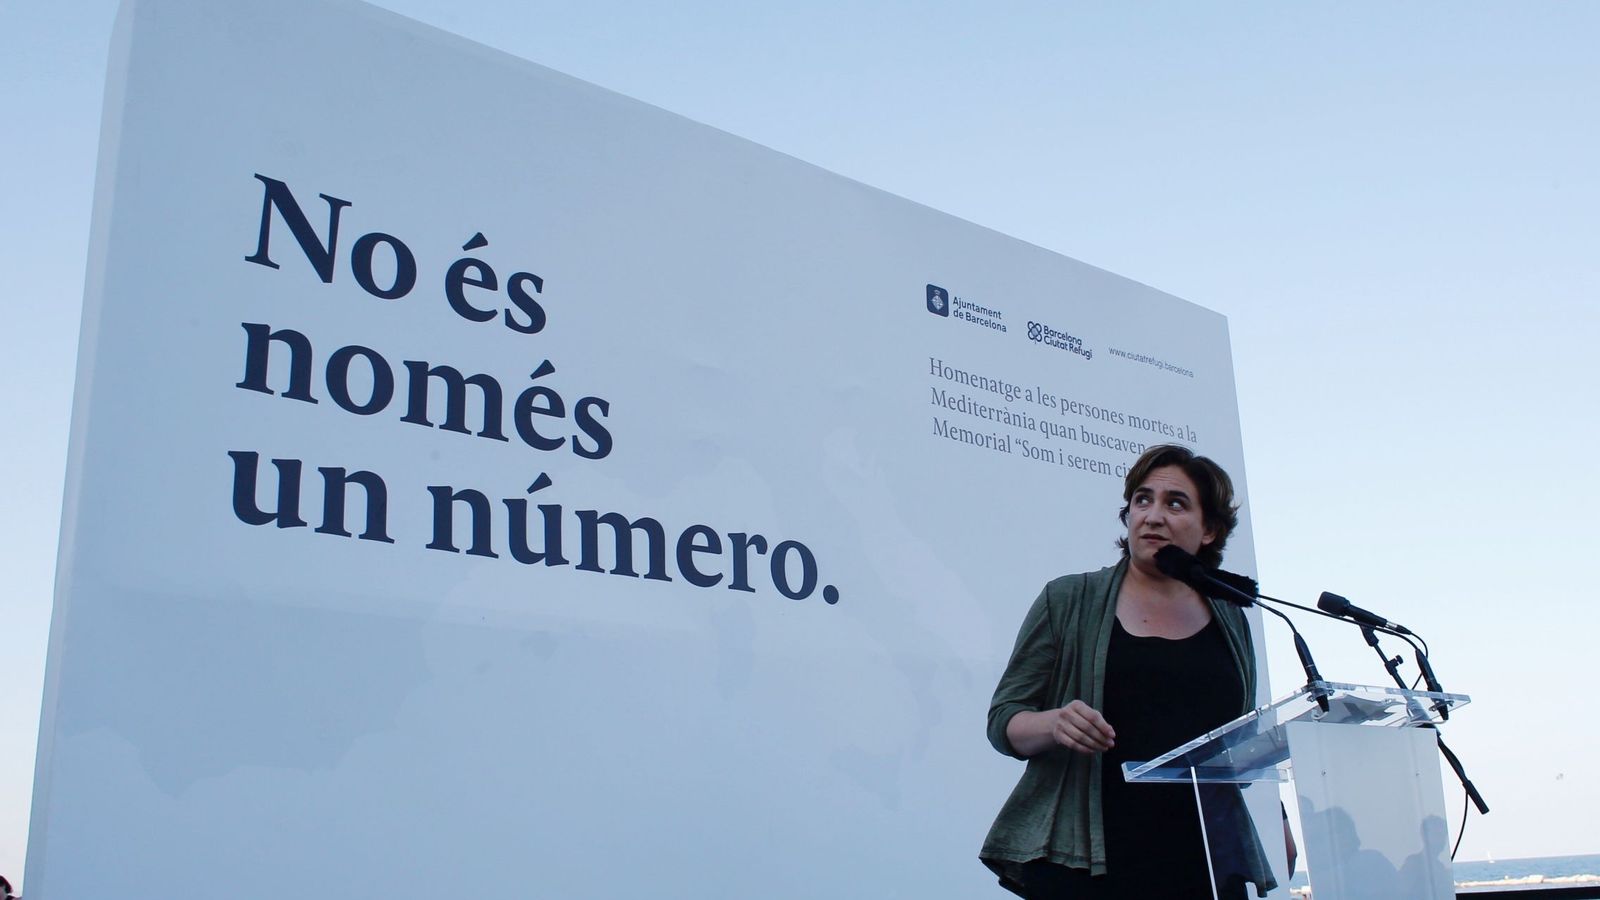 Foto:  La alcaldesa de Barcelona, Ada Colau. (EFE)